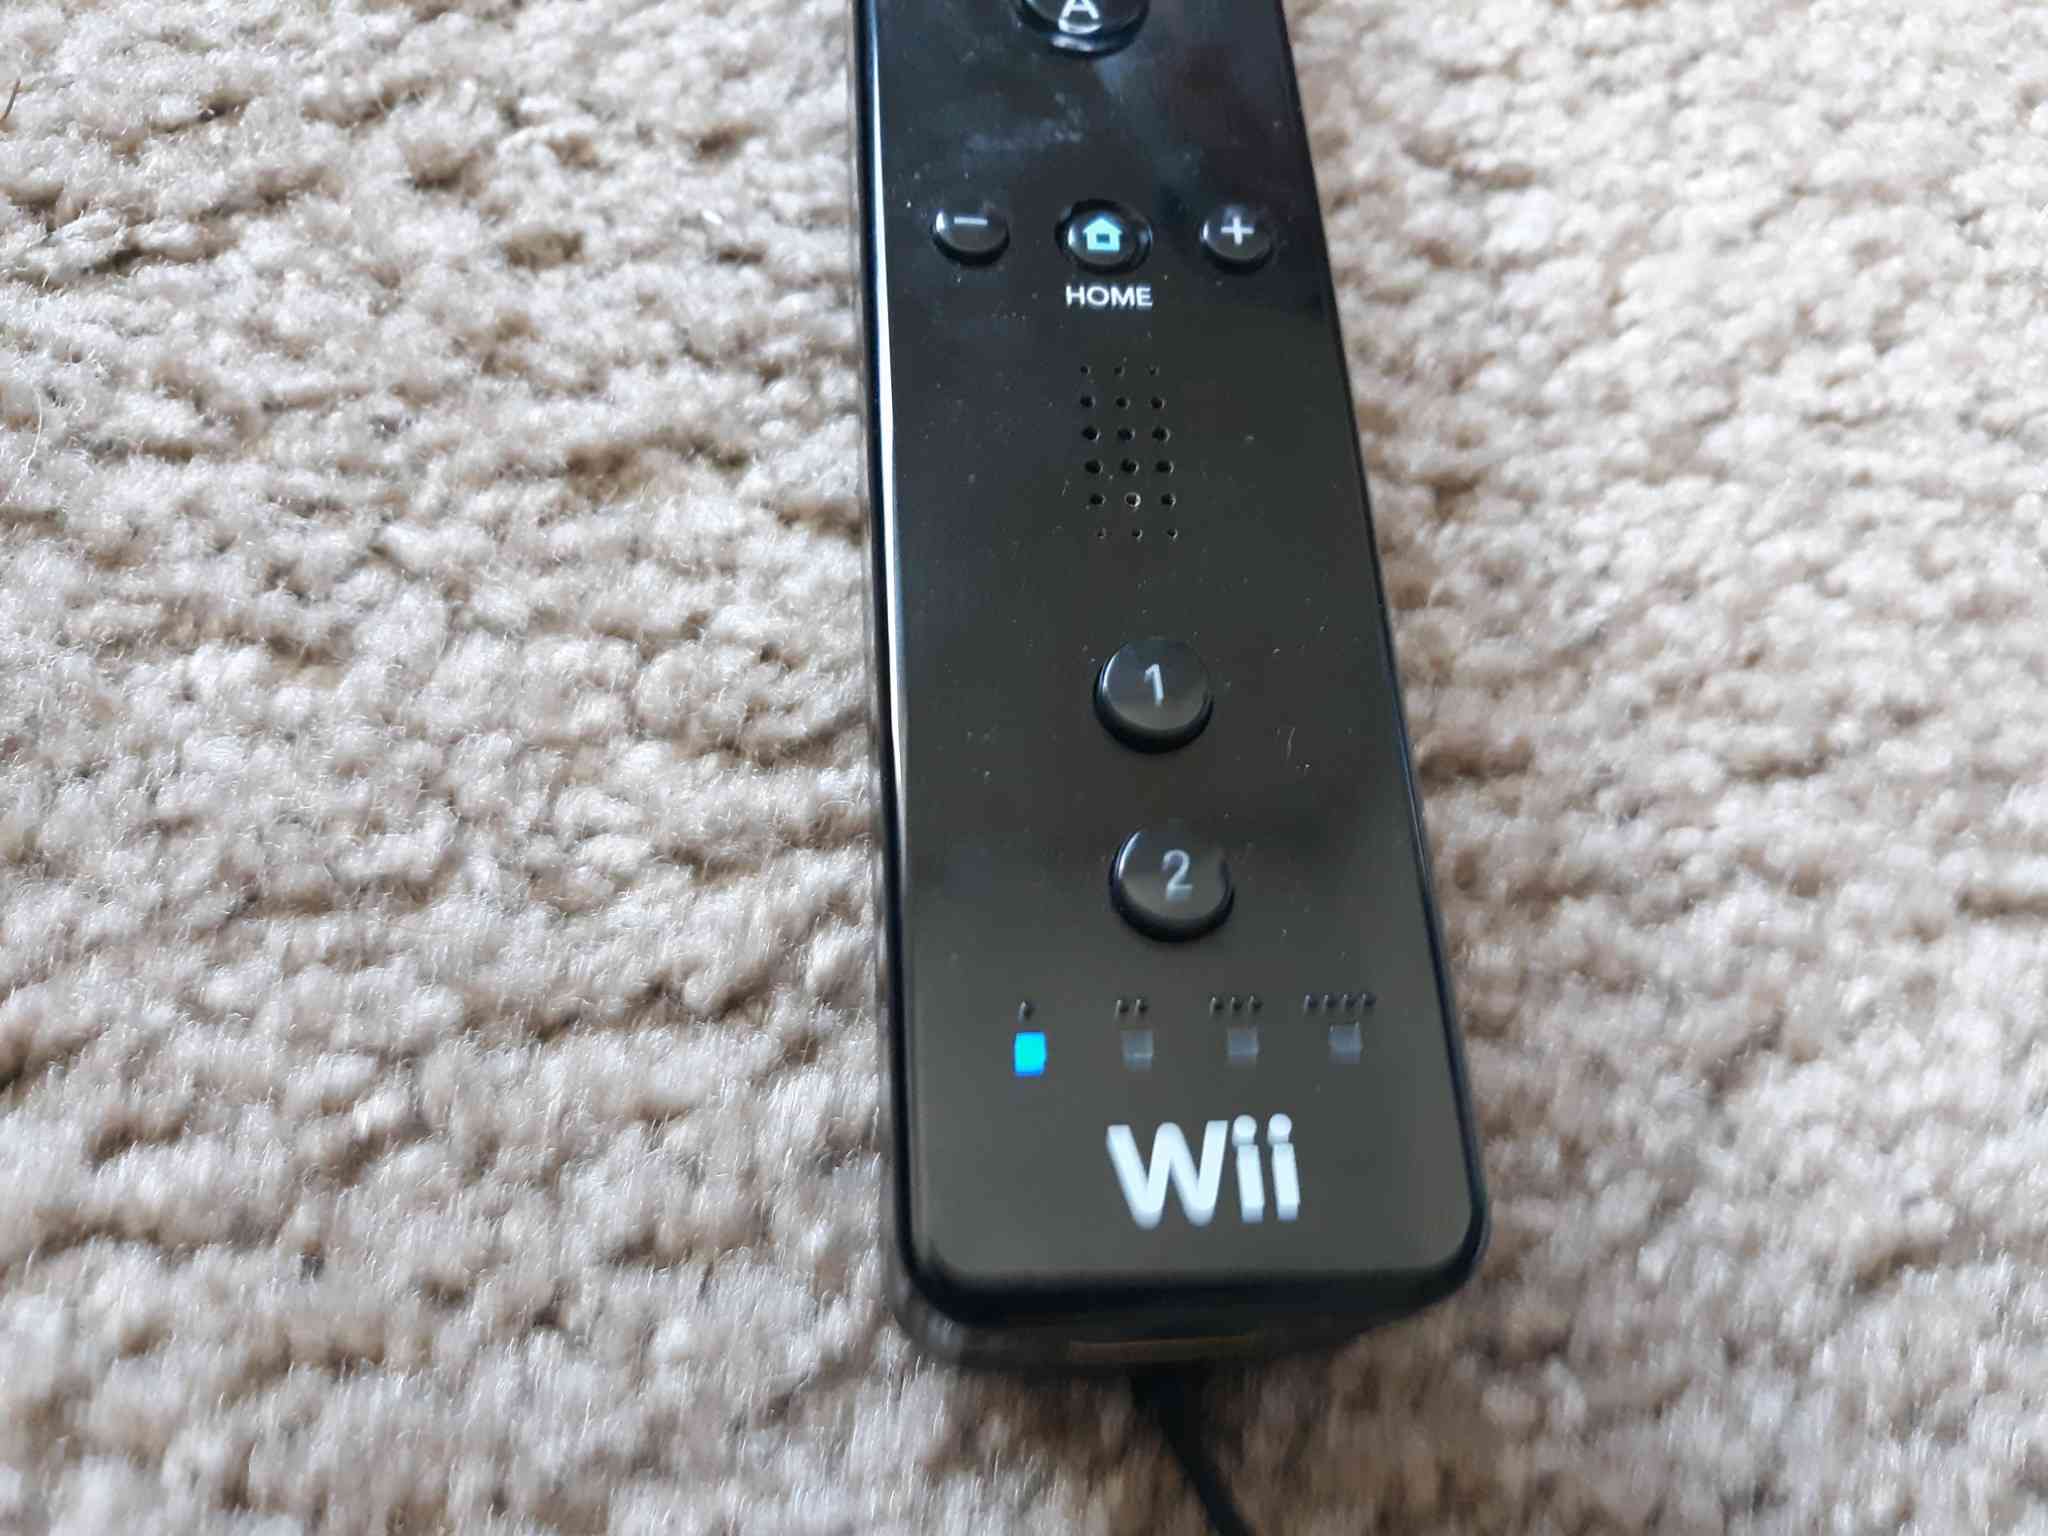 Knapparna 1 och 2 på Wii-fjärrkontrollen